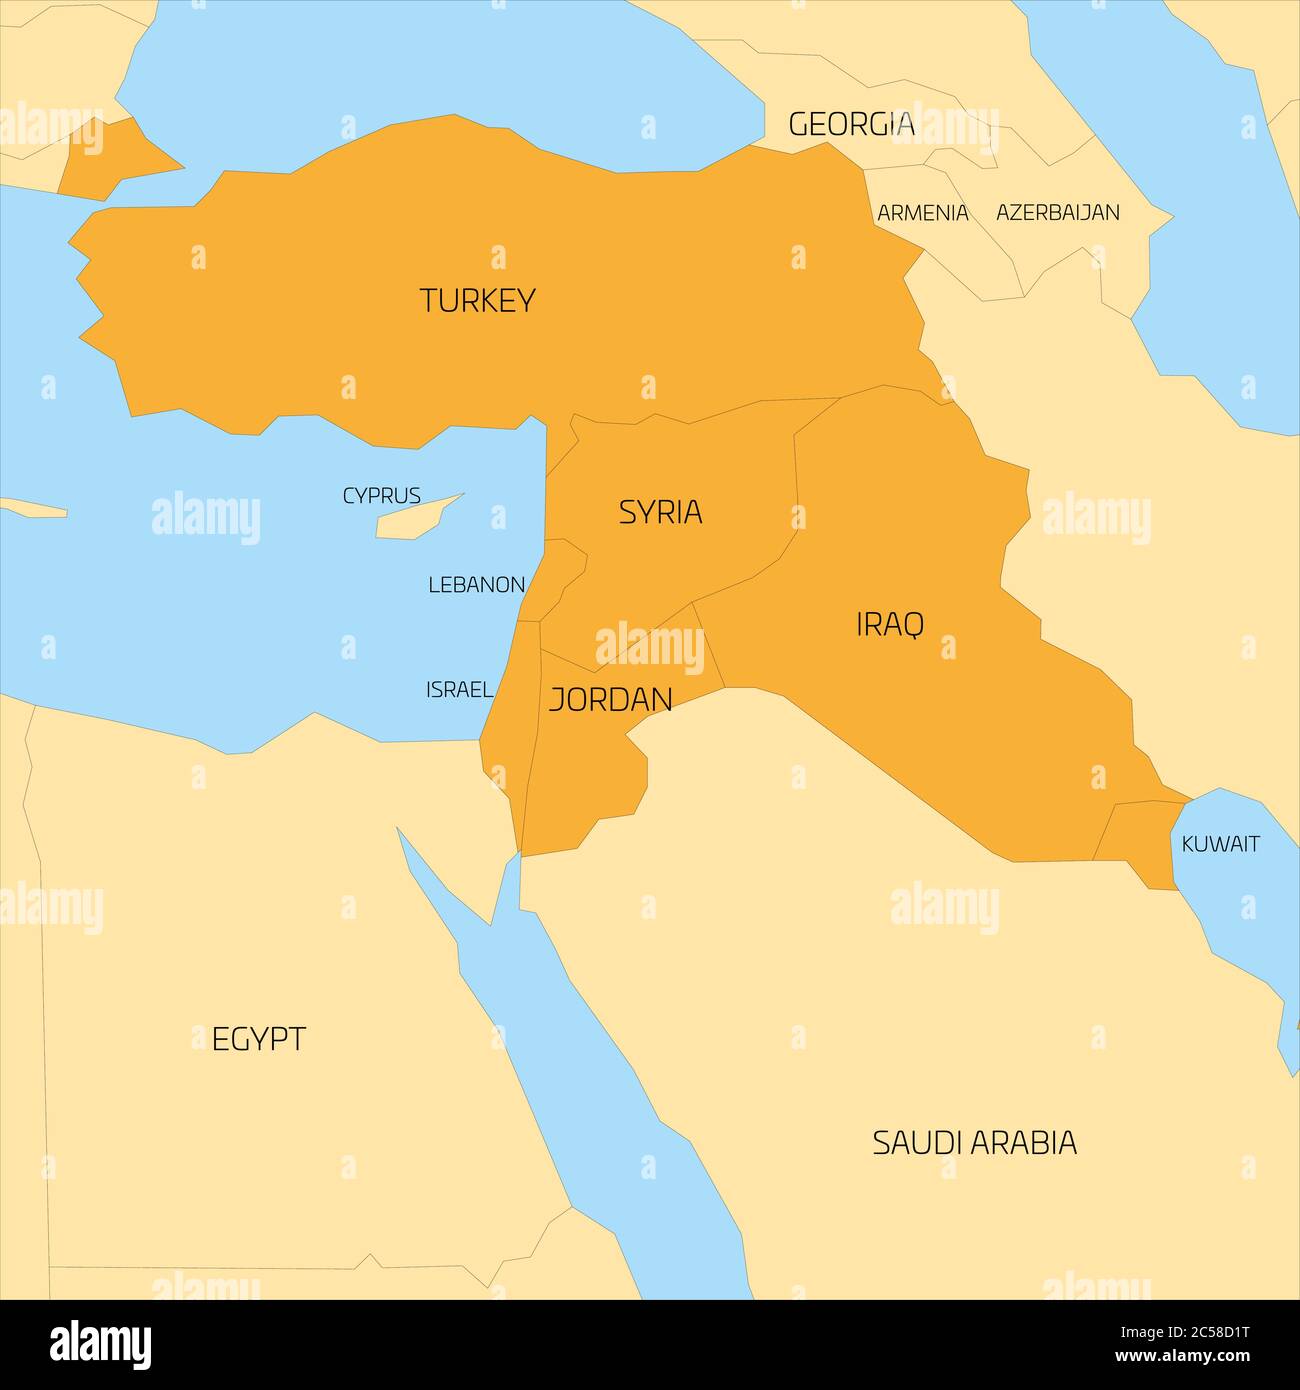 Karte der transkontinentalen Region Naher Osten oder Naher Osten mit orangefarbenen Hervorhebung der Türkei, Syrien, Irak, Jordanien, Libanon und Israel. Flache Karte mit gelbem Land, dünnen schwarzen Grenzen und blauem Meer. Stock Vektor